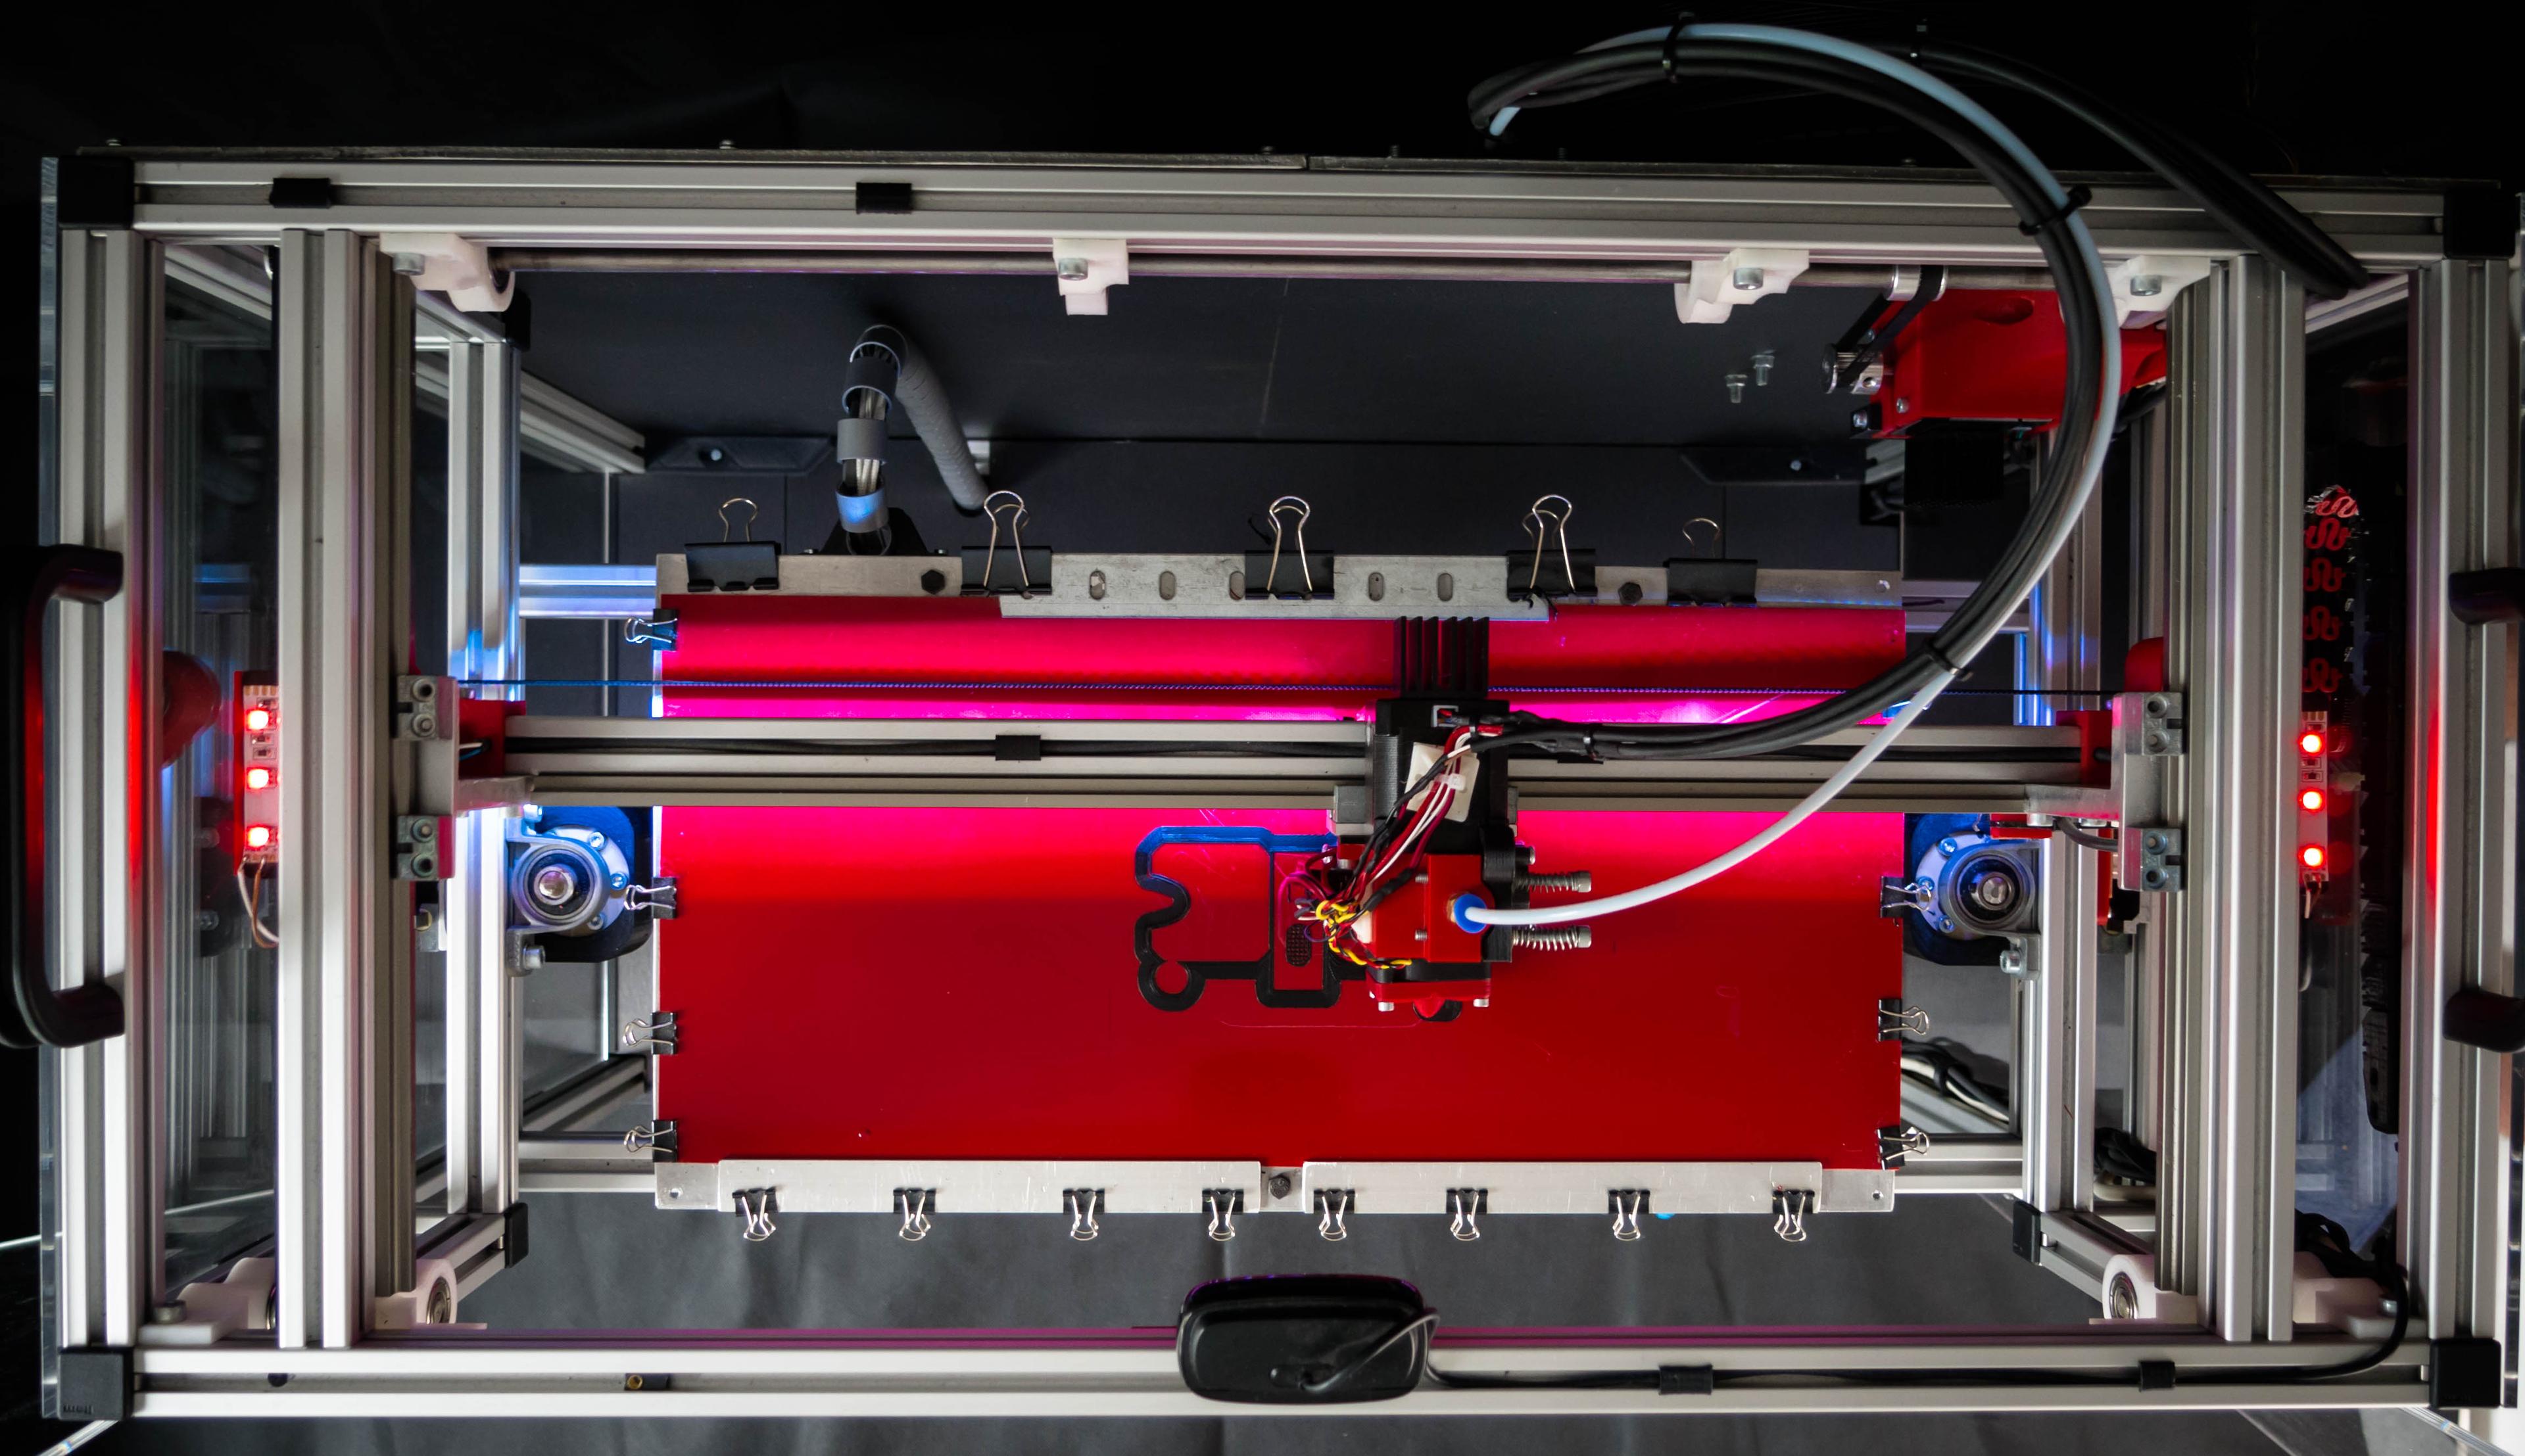 MEGATRON the DIY 3D Printer